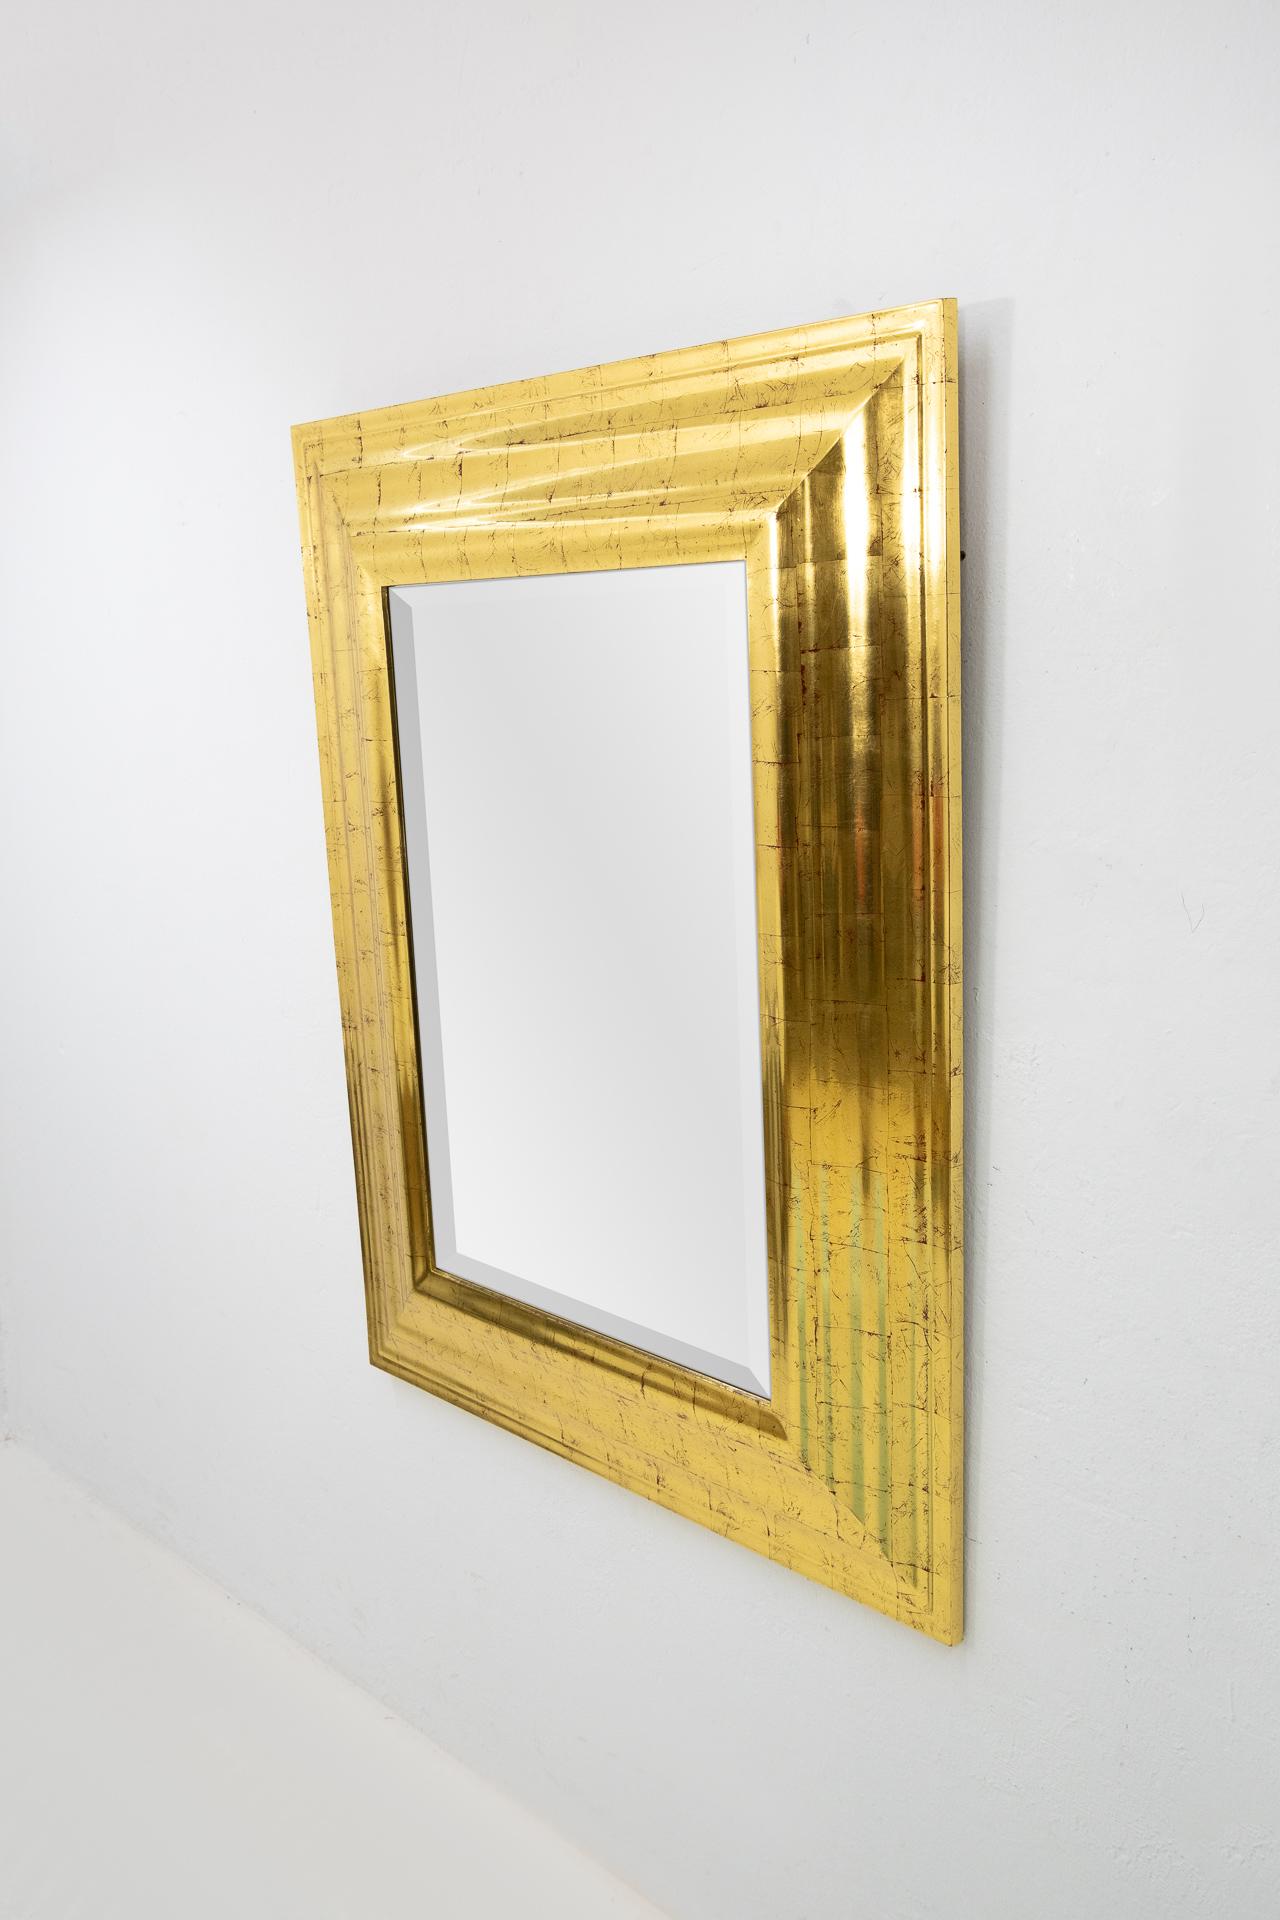 Belgian Deknudt Gold Wall Mirror, Regency, 1970s For Sale